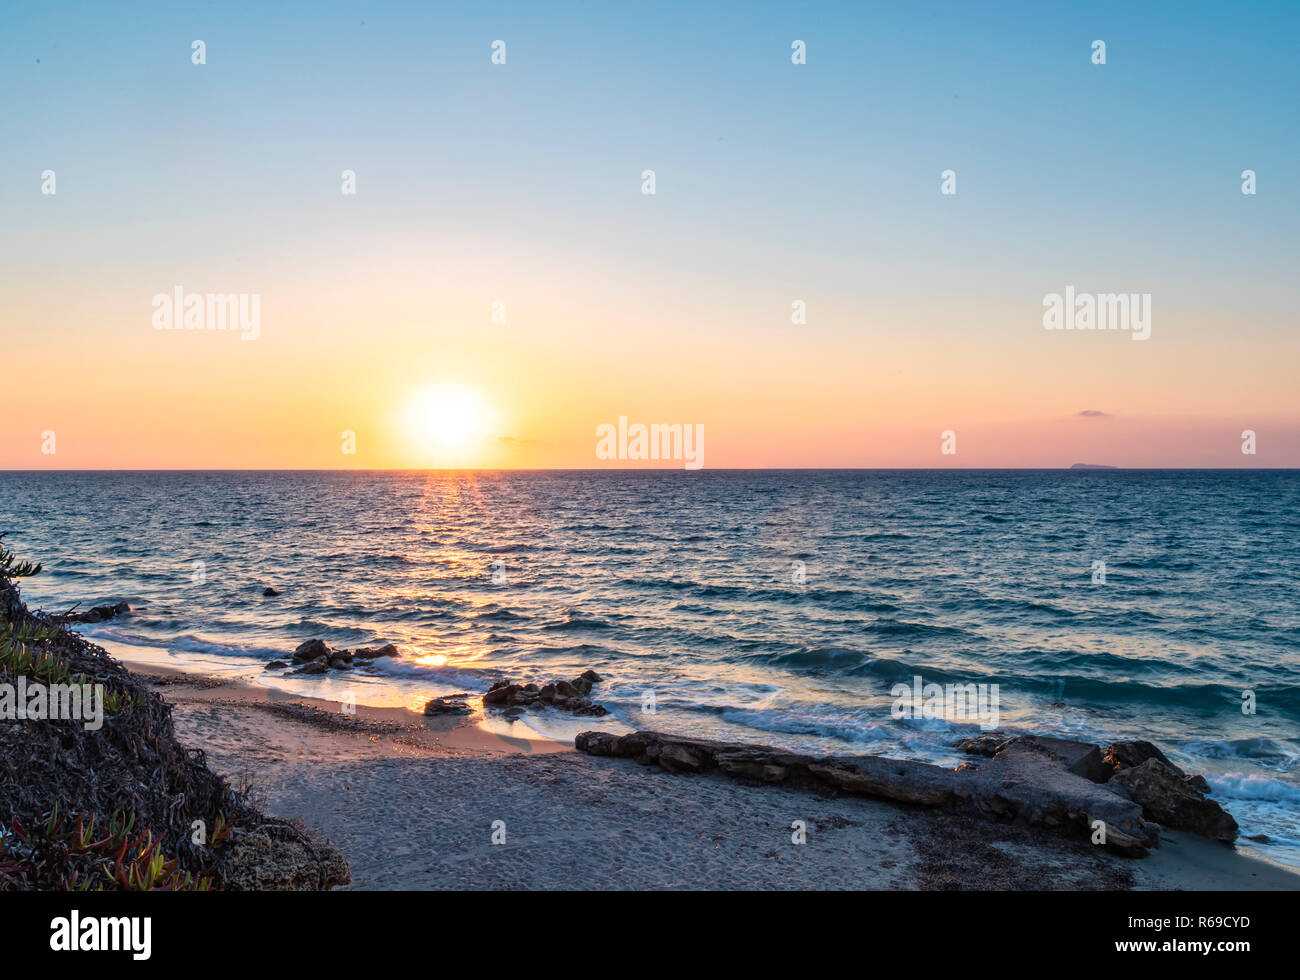 Vue paysage d'un coucher de soleil sur la mer Méditerranée sur une île grecque. Banque D'Images